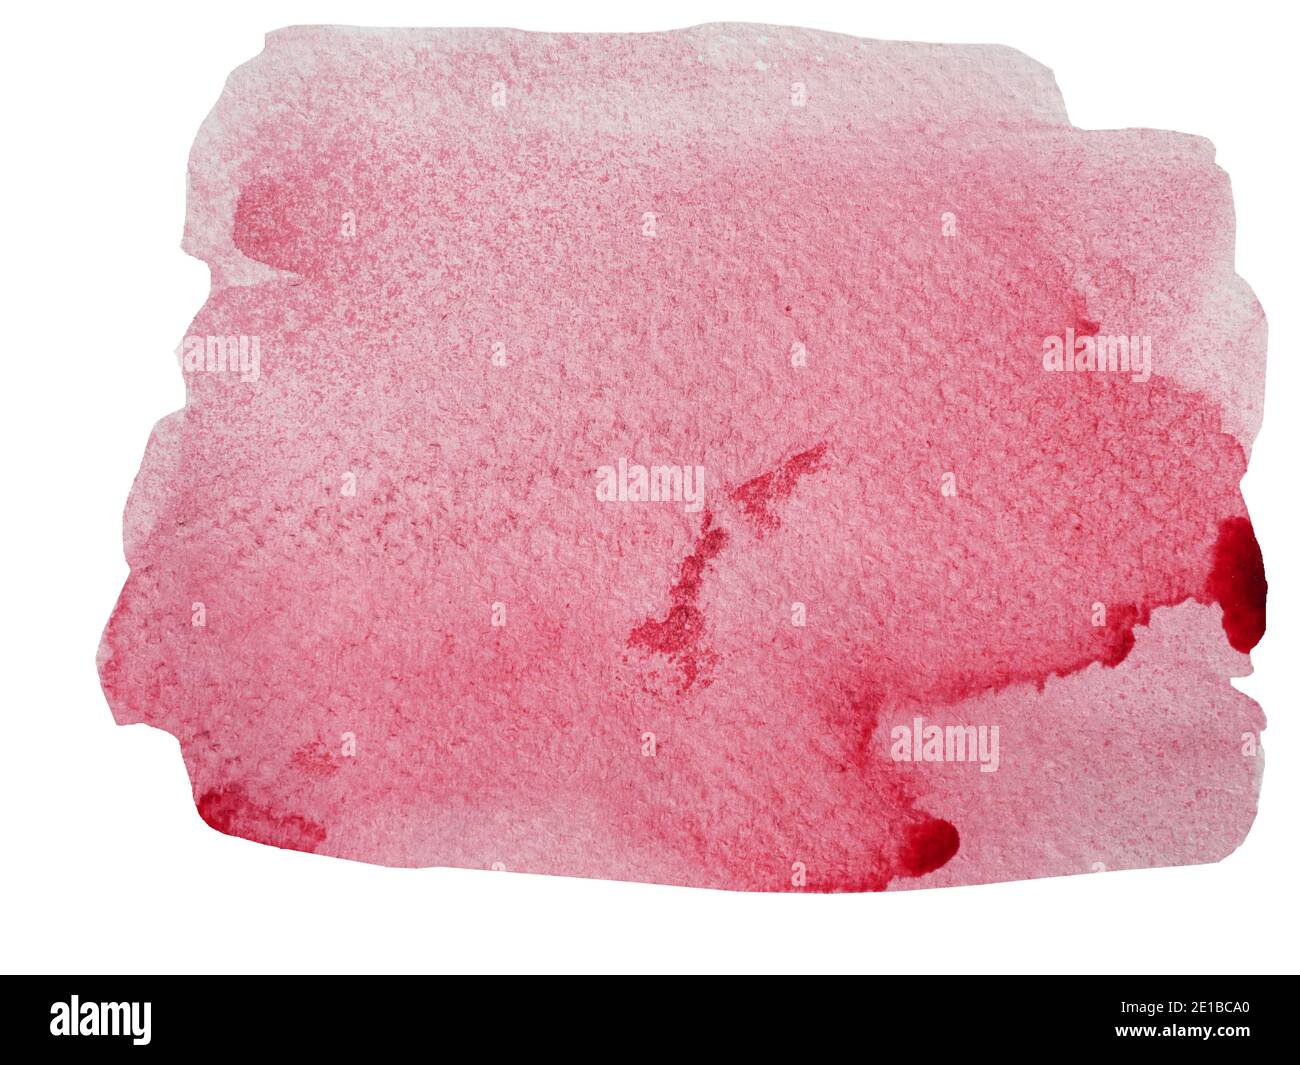 Tratto acquerello e spray su carta bianca, sfondo astratto disegnato a mano colore rosa liquido gocciolamento isolato su sfondo bianco Foto Stock